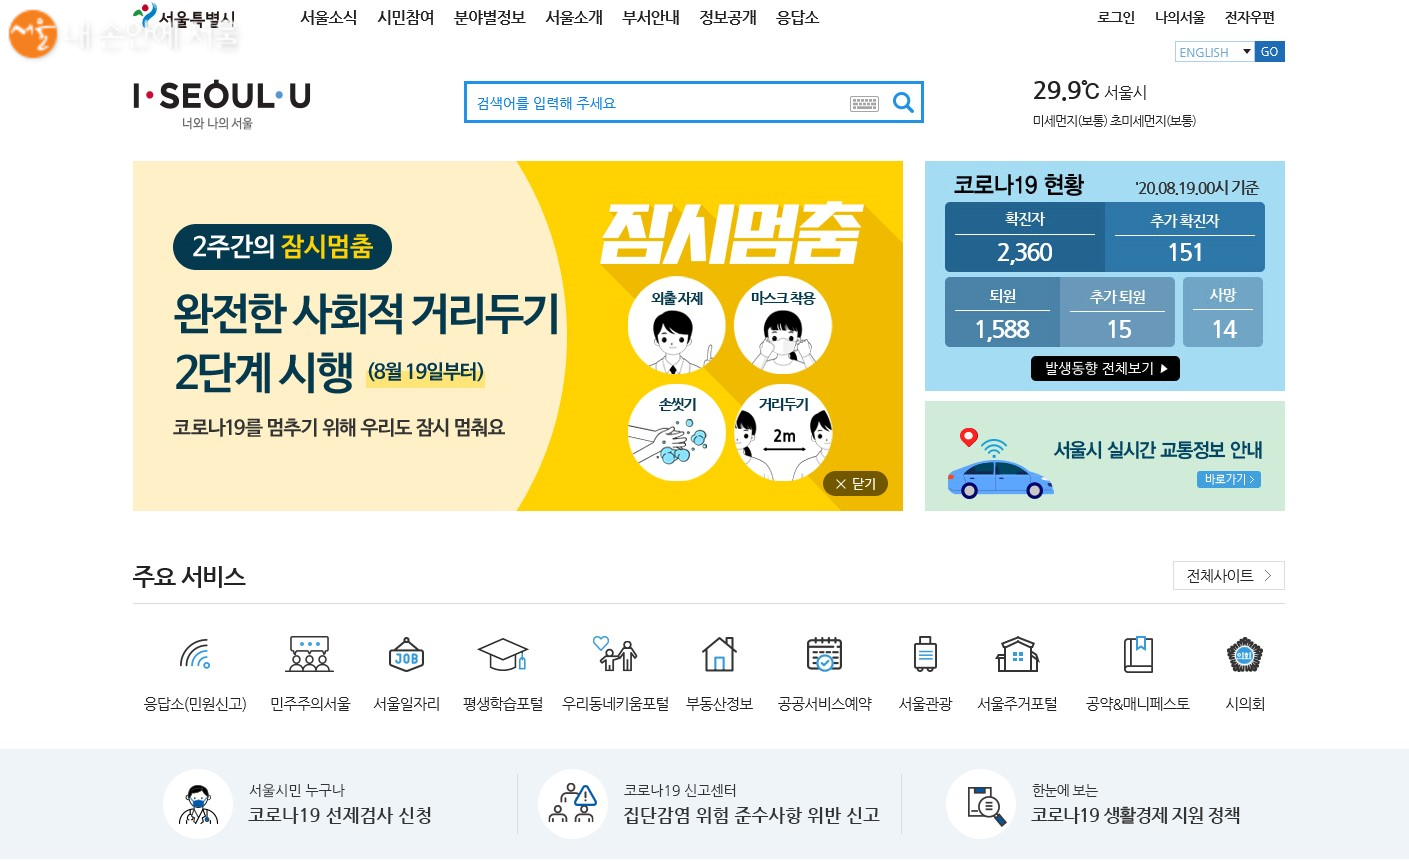 서울시 홈페이지 메인화면에서 우측 하단 '전체사이트'를 접속하면 관련 기관의 포털로 바로 갈 수 있다